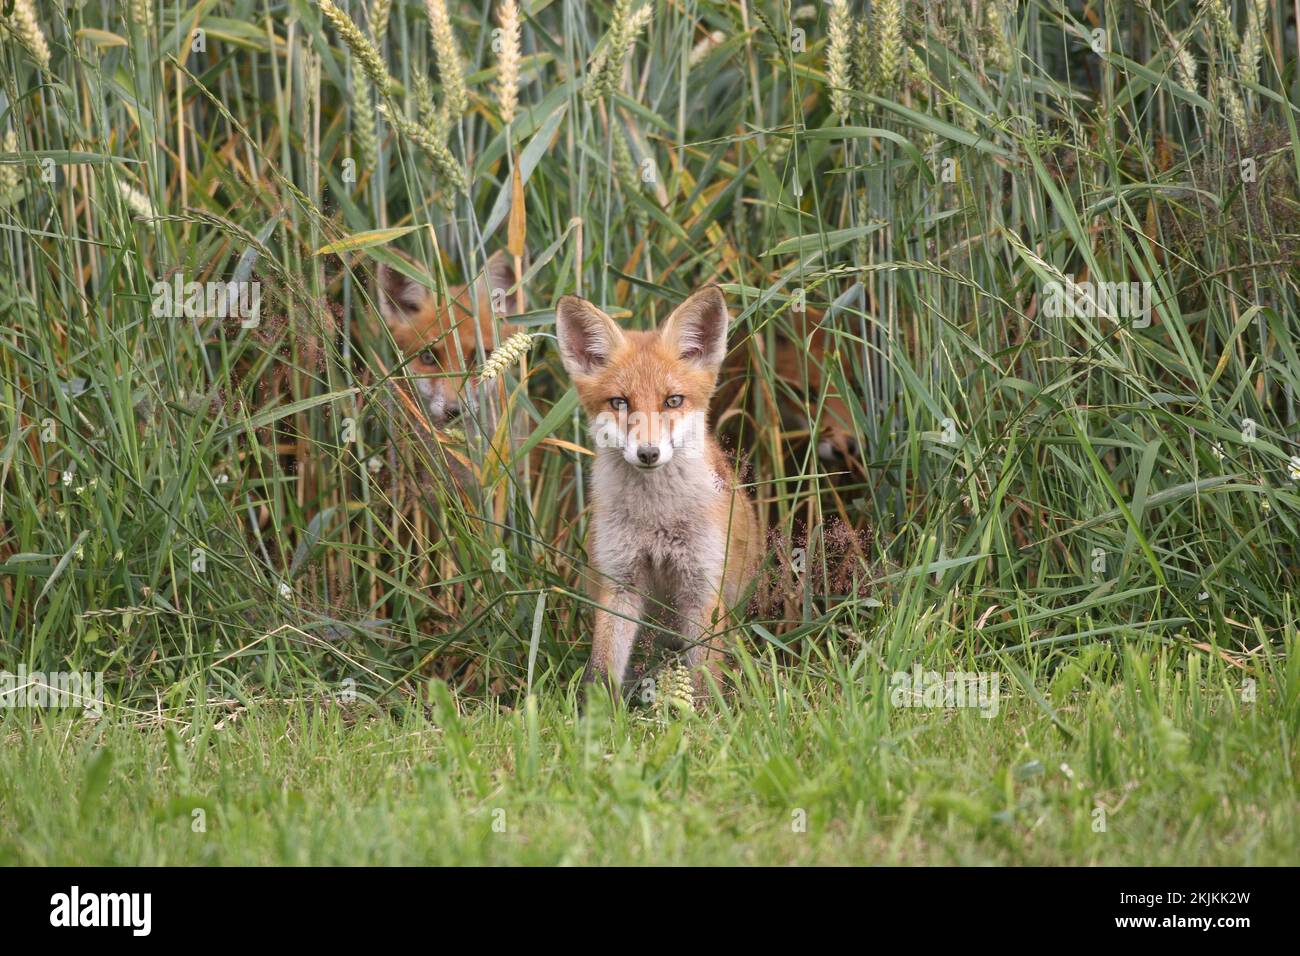 Rotfuchs (Vulpes vulpes), jung gesichert vor einem Weizenfeld, zwei Geschwister auf dem Feld, Allgäu, Bayern, Deutschland, Europa Stockfoto